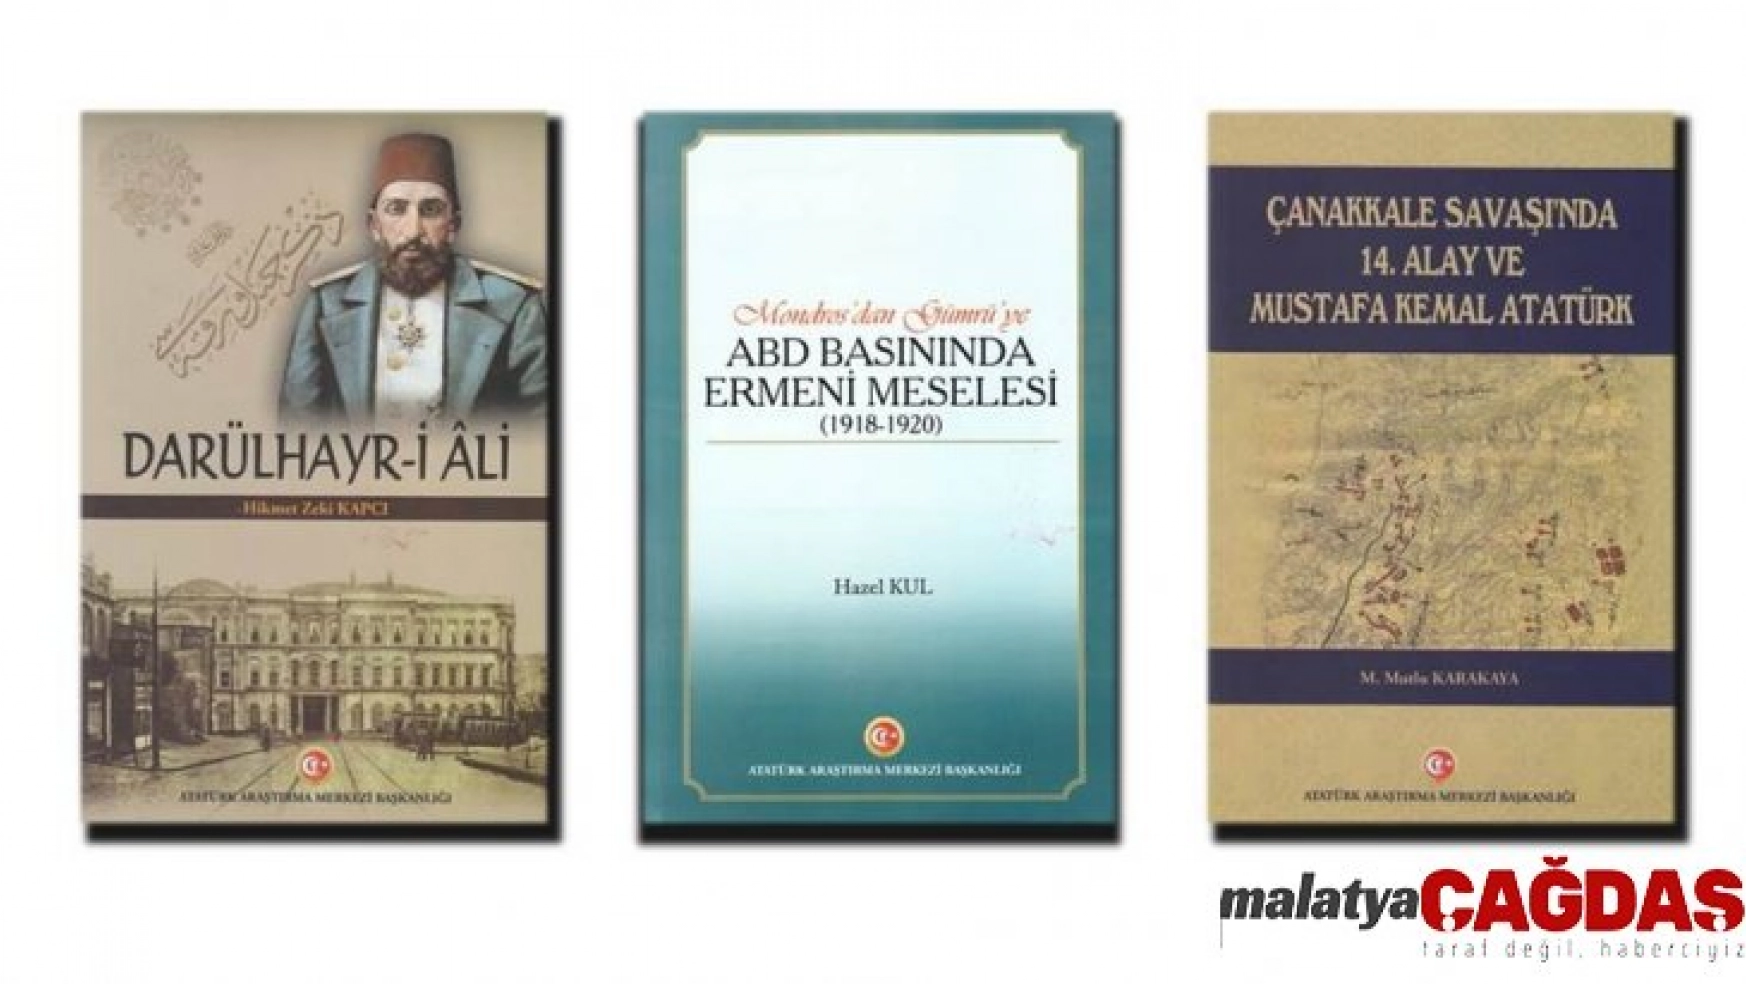 Atatürk Araştırma Merkezi yayınlarına 3 yeni eser daha eklendi